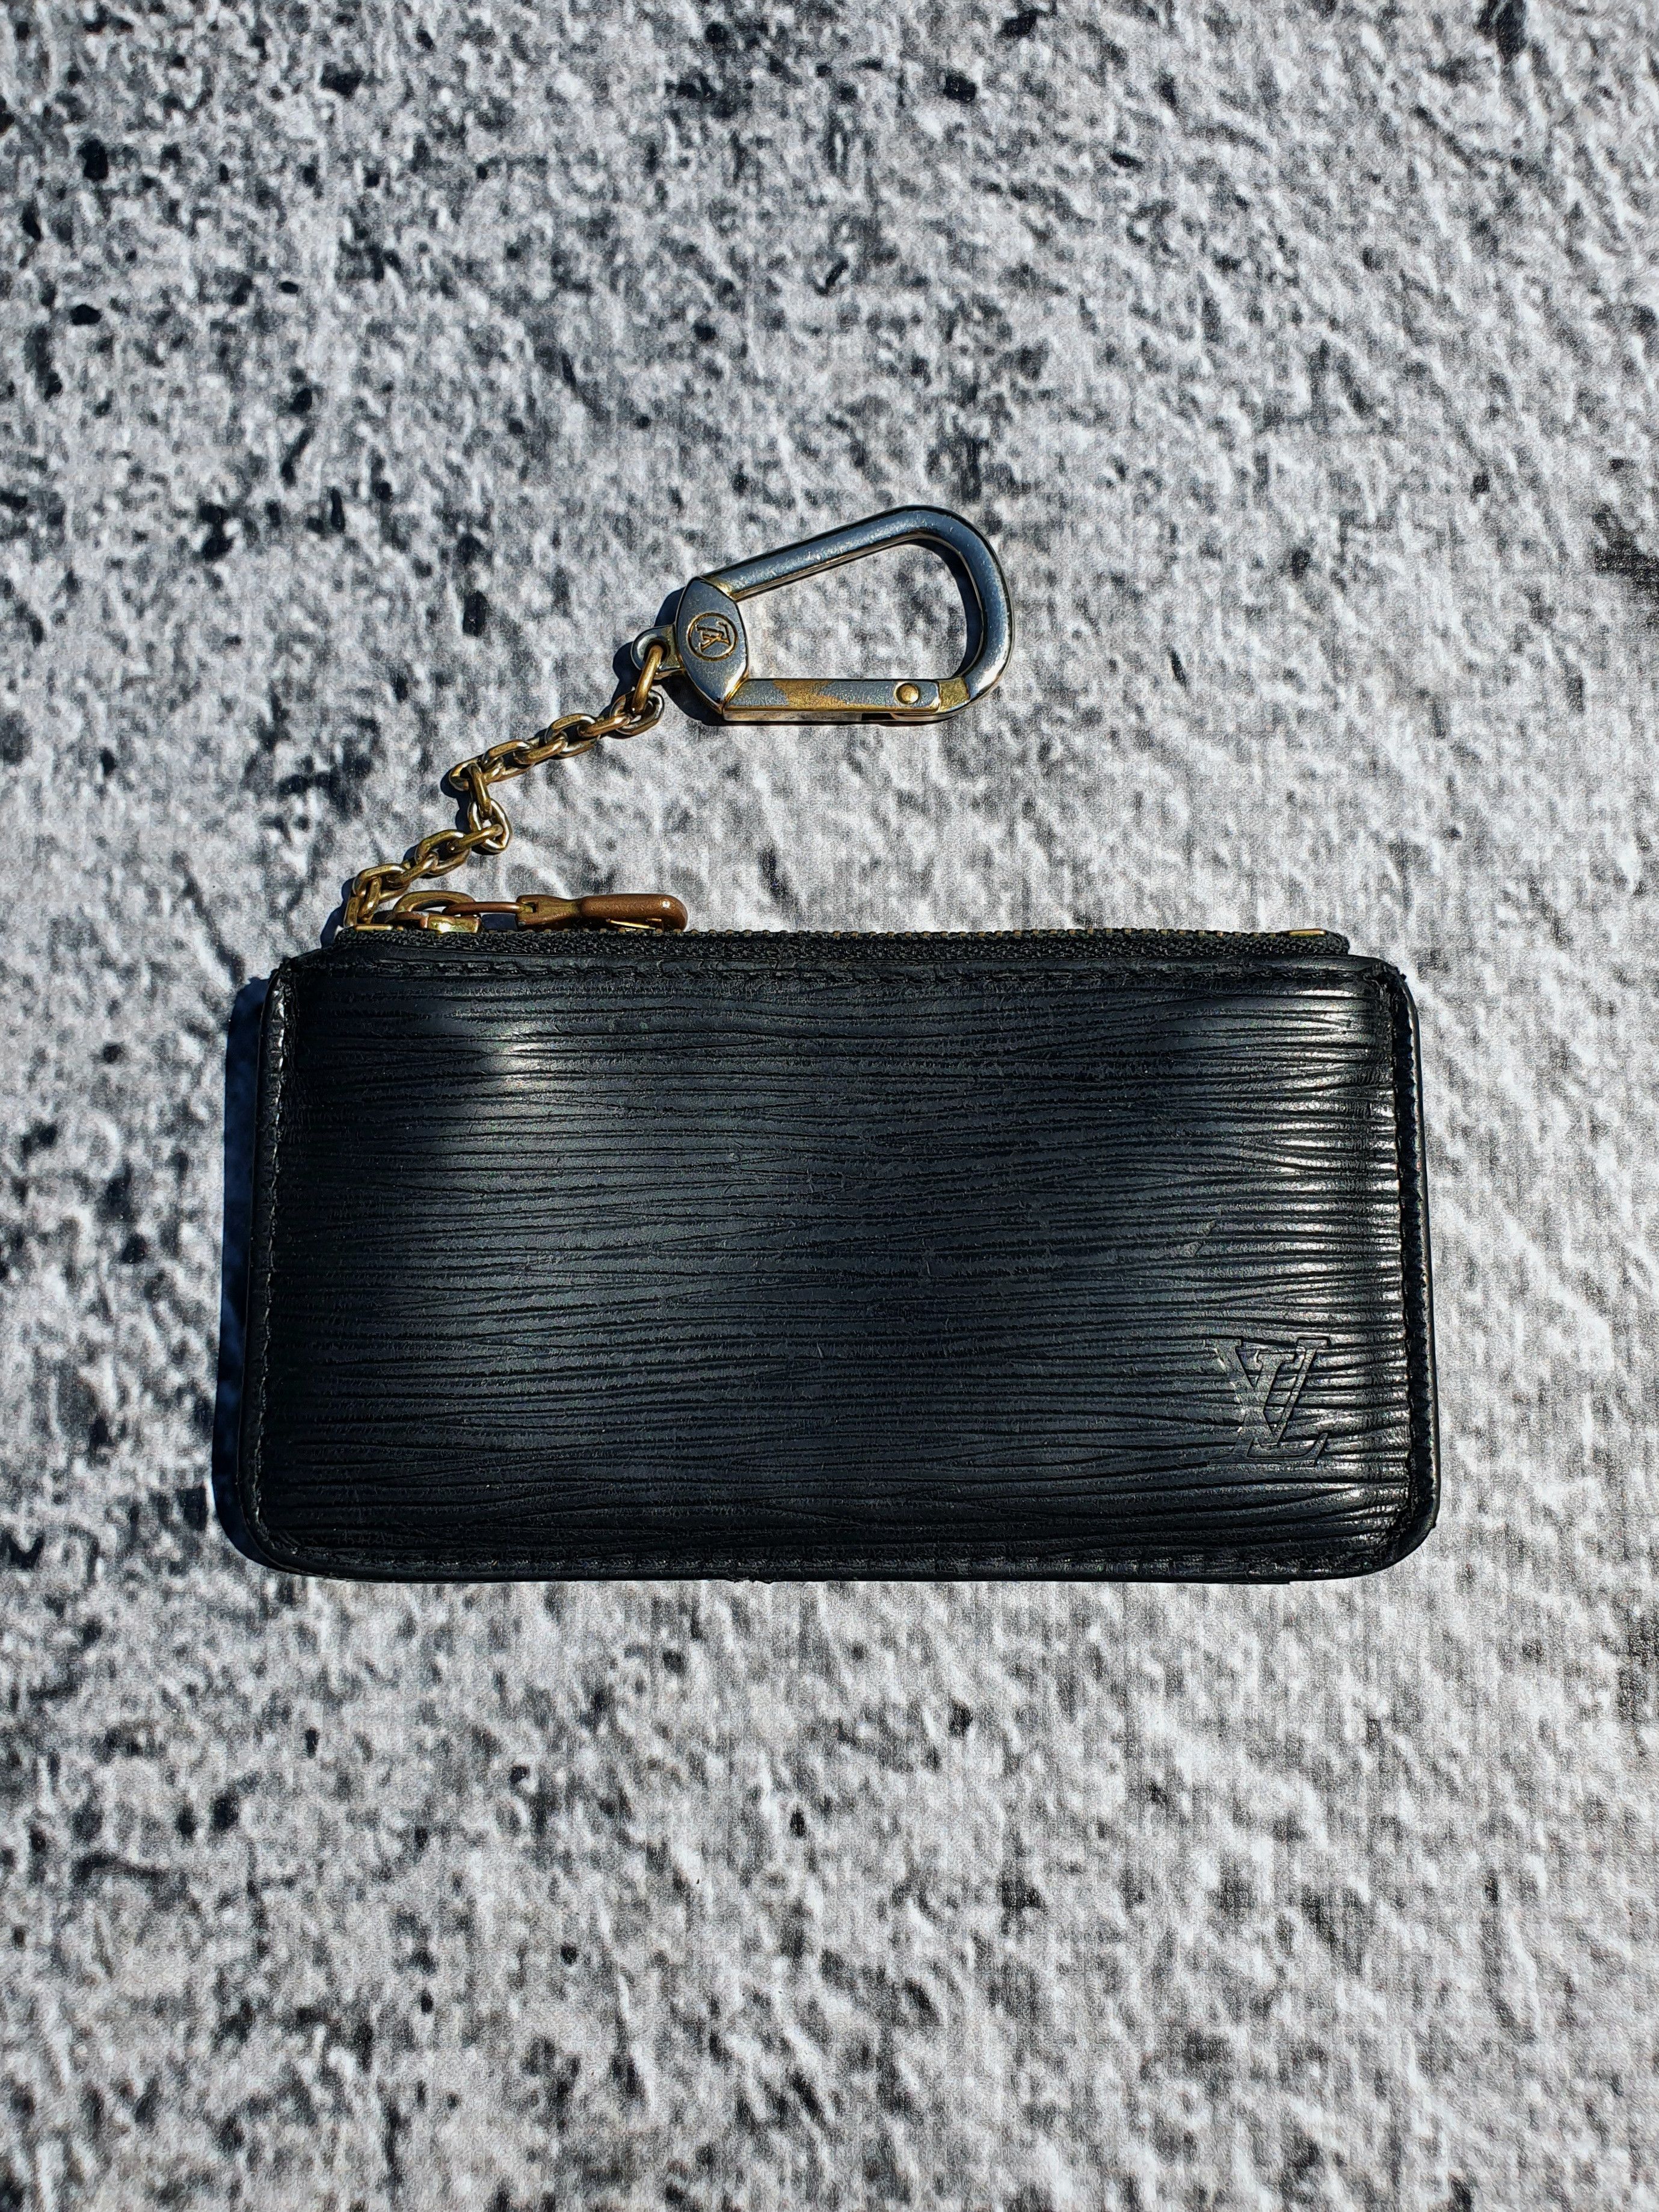 Vintage Louis Vuitton Vernis Leather Key Pouch#vintagelouisvuitton